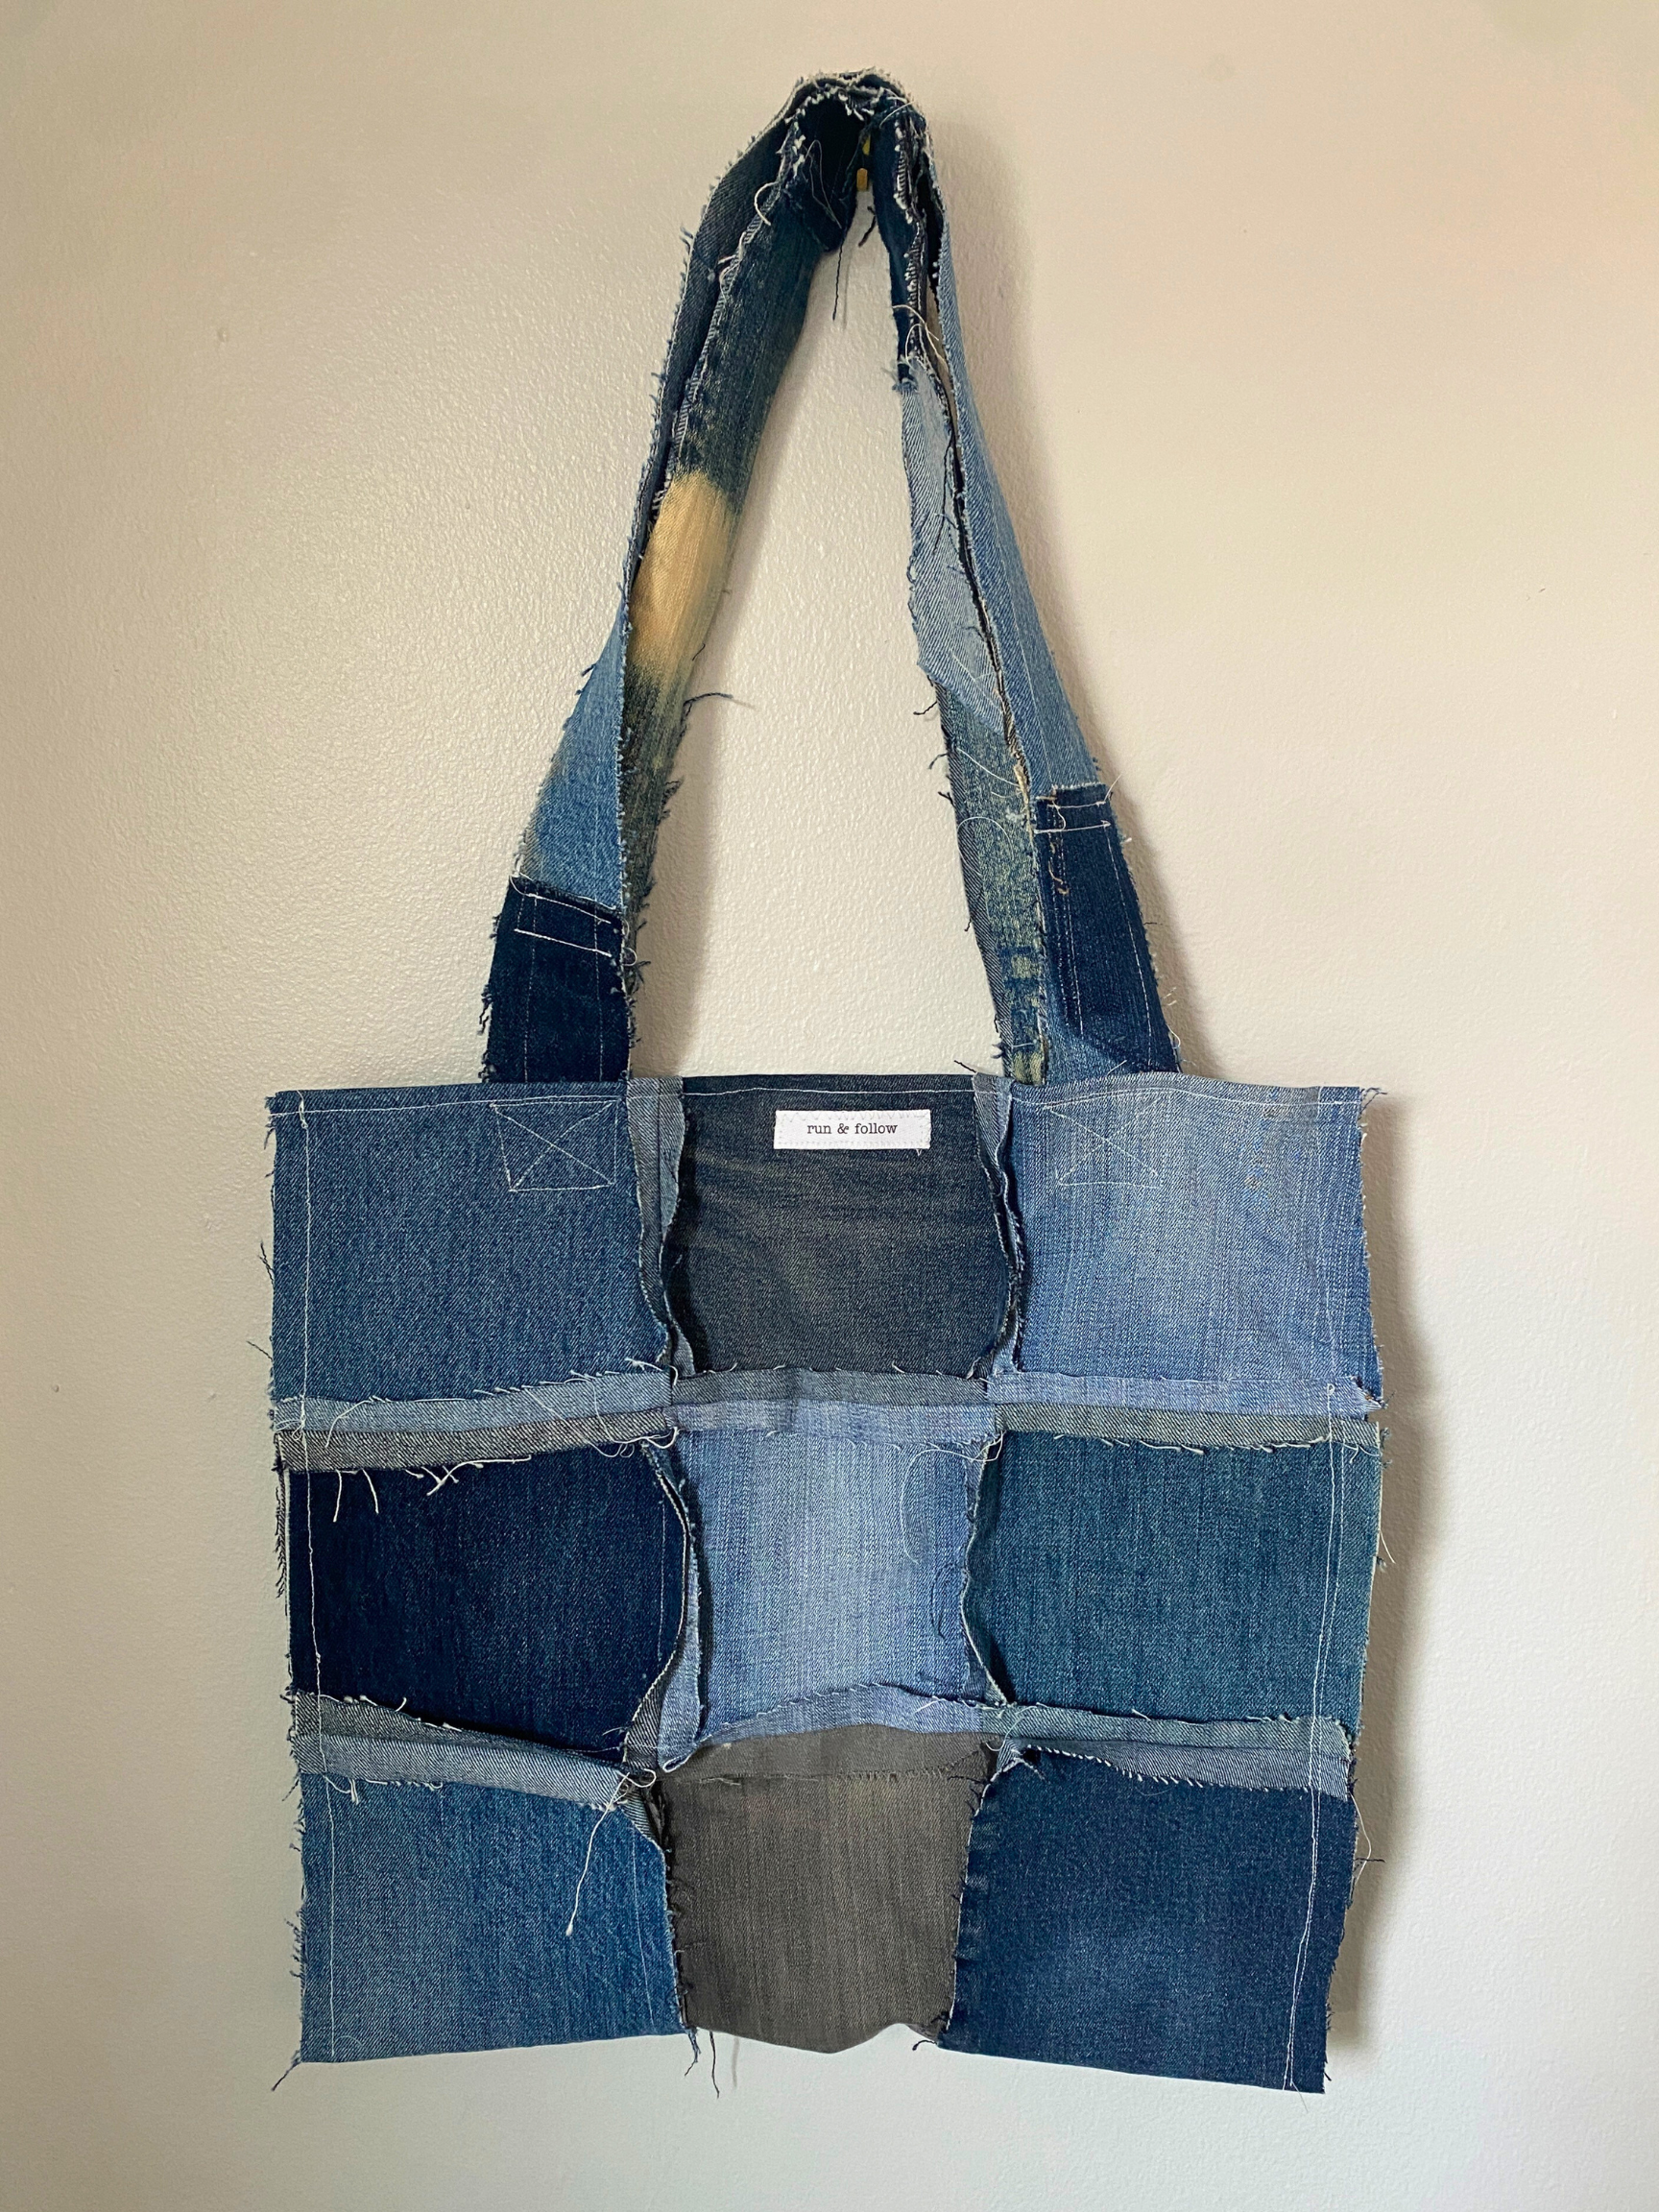 Distressed Denim Tote 22- Recycled Denim Patchwork Jumbo Tote Bag